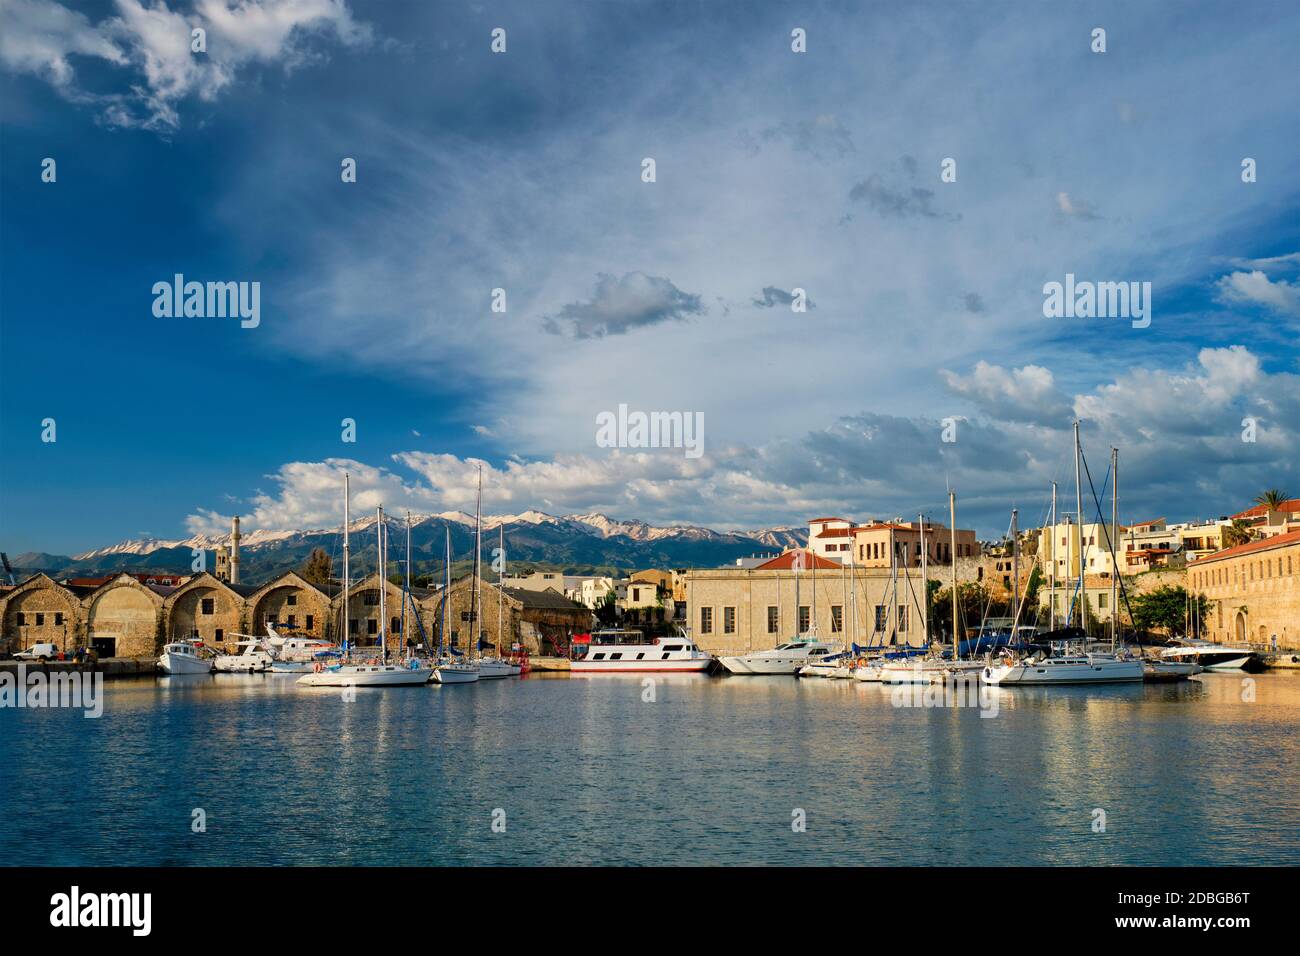 Yachts les bateaux dans le vieux port pittoresque de Chania est l'un des monuments et des destinations touristiques de l'île de Crète dans la matinée. Chania, Crète, Grèce Banque D'Images